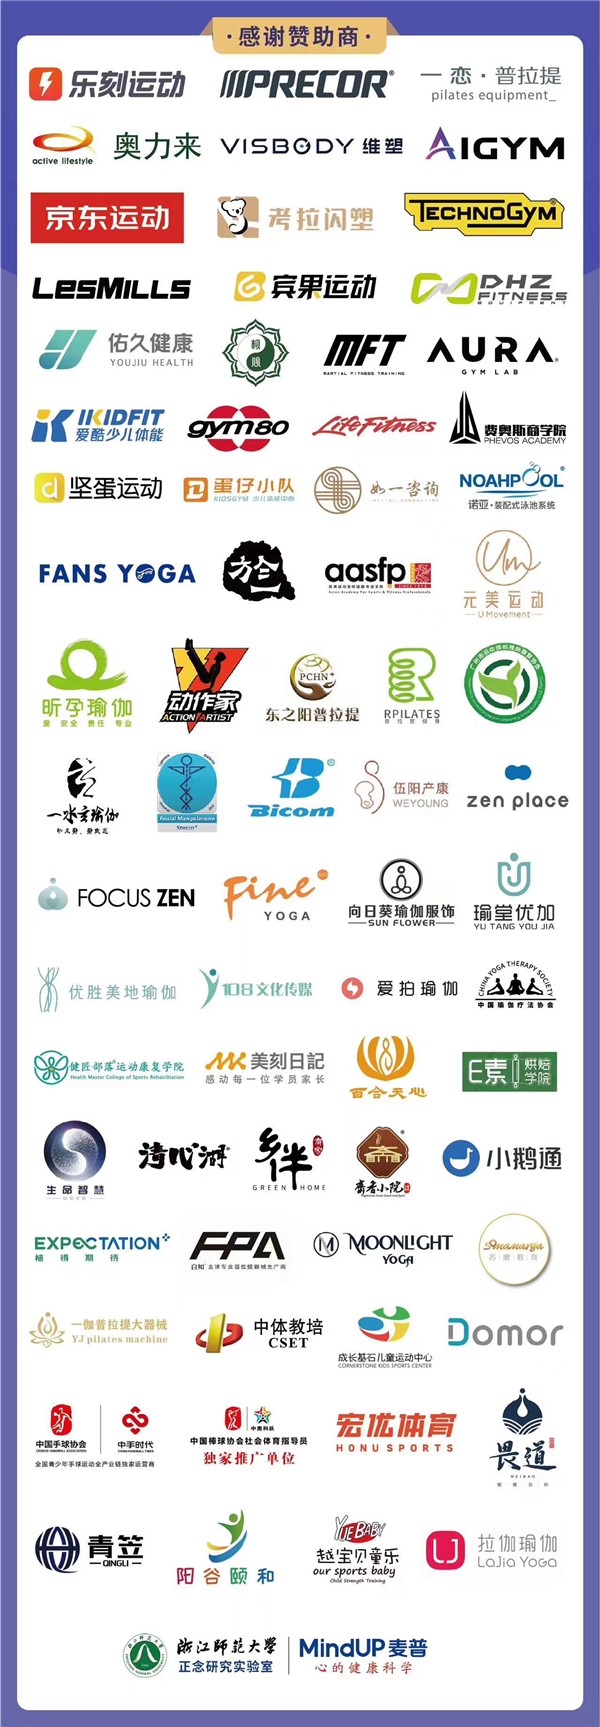 第十一届中国管理论坛瑜伽年度峰会盛大举行(图1)